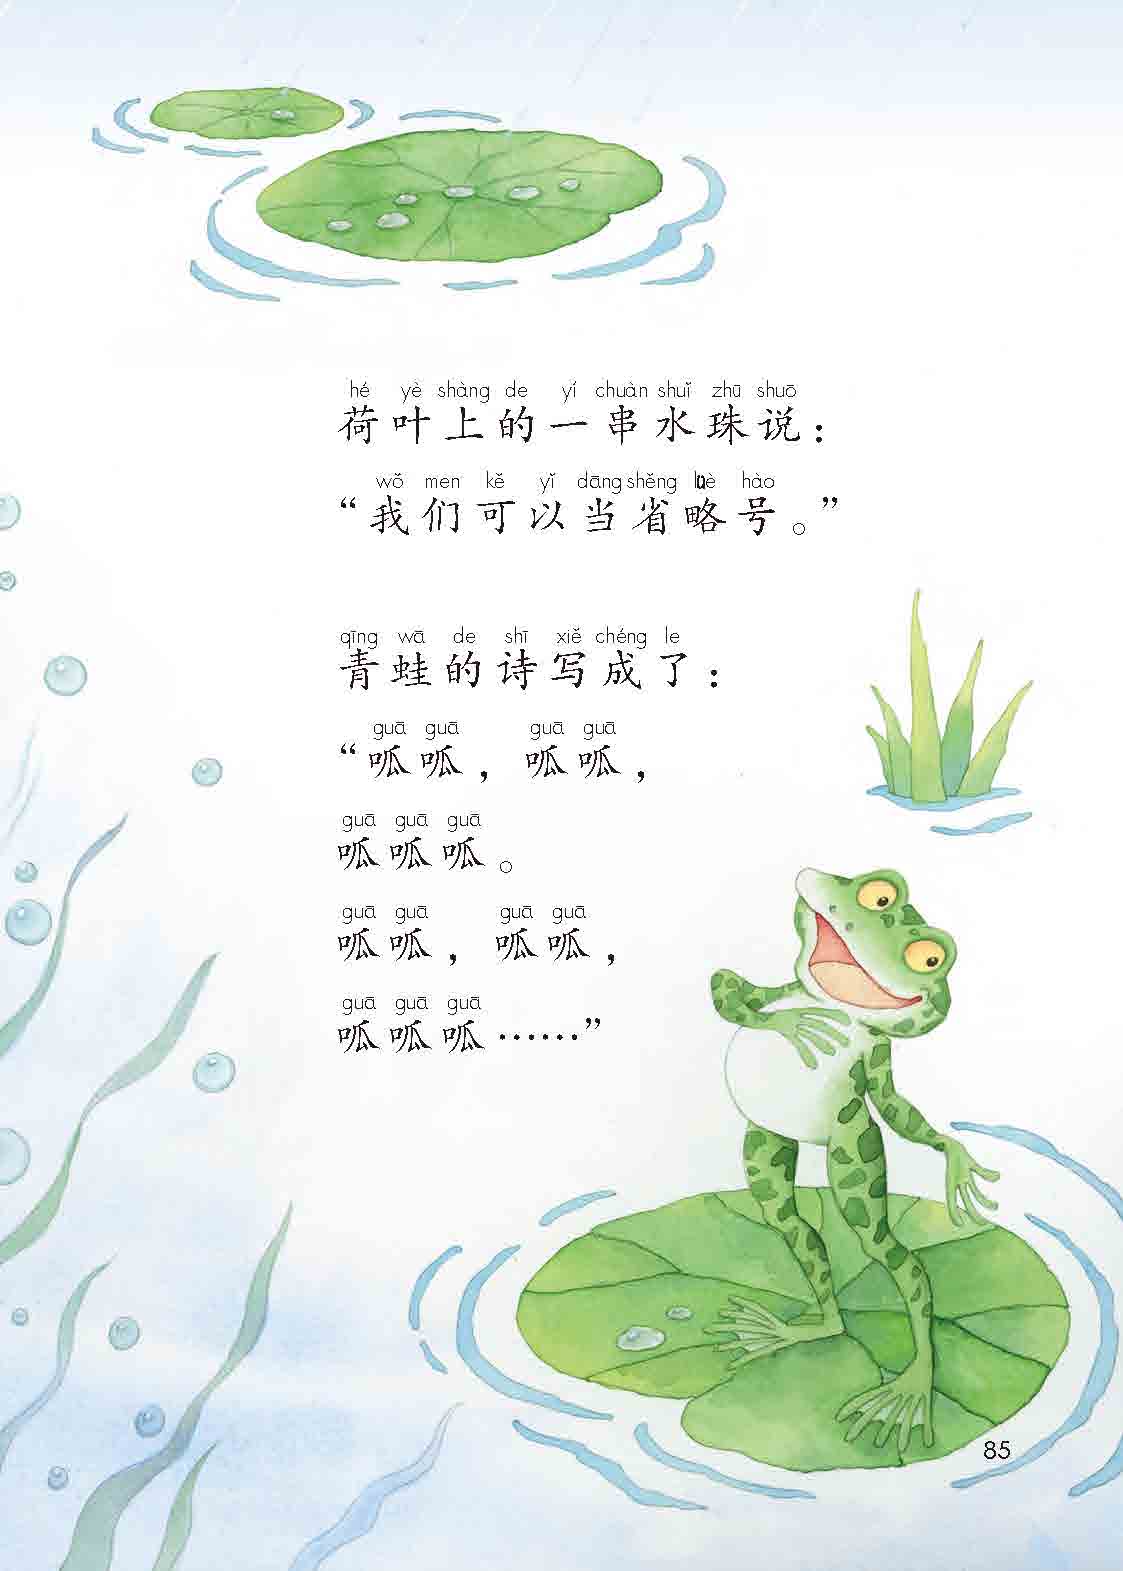 「7」. 青蛙写诗(2)